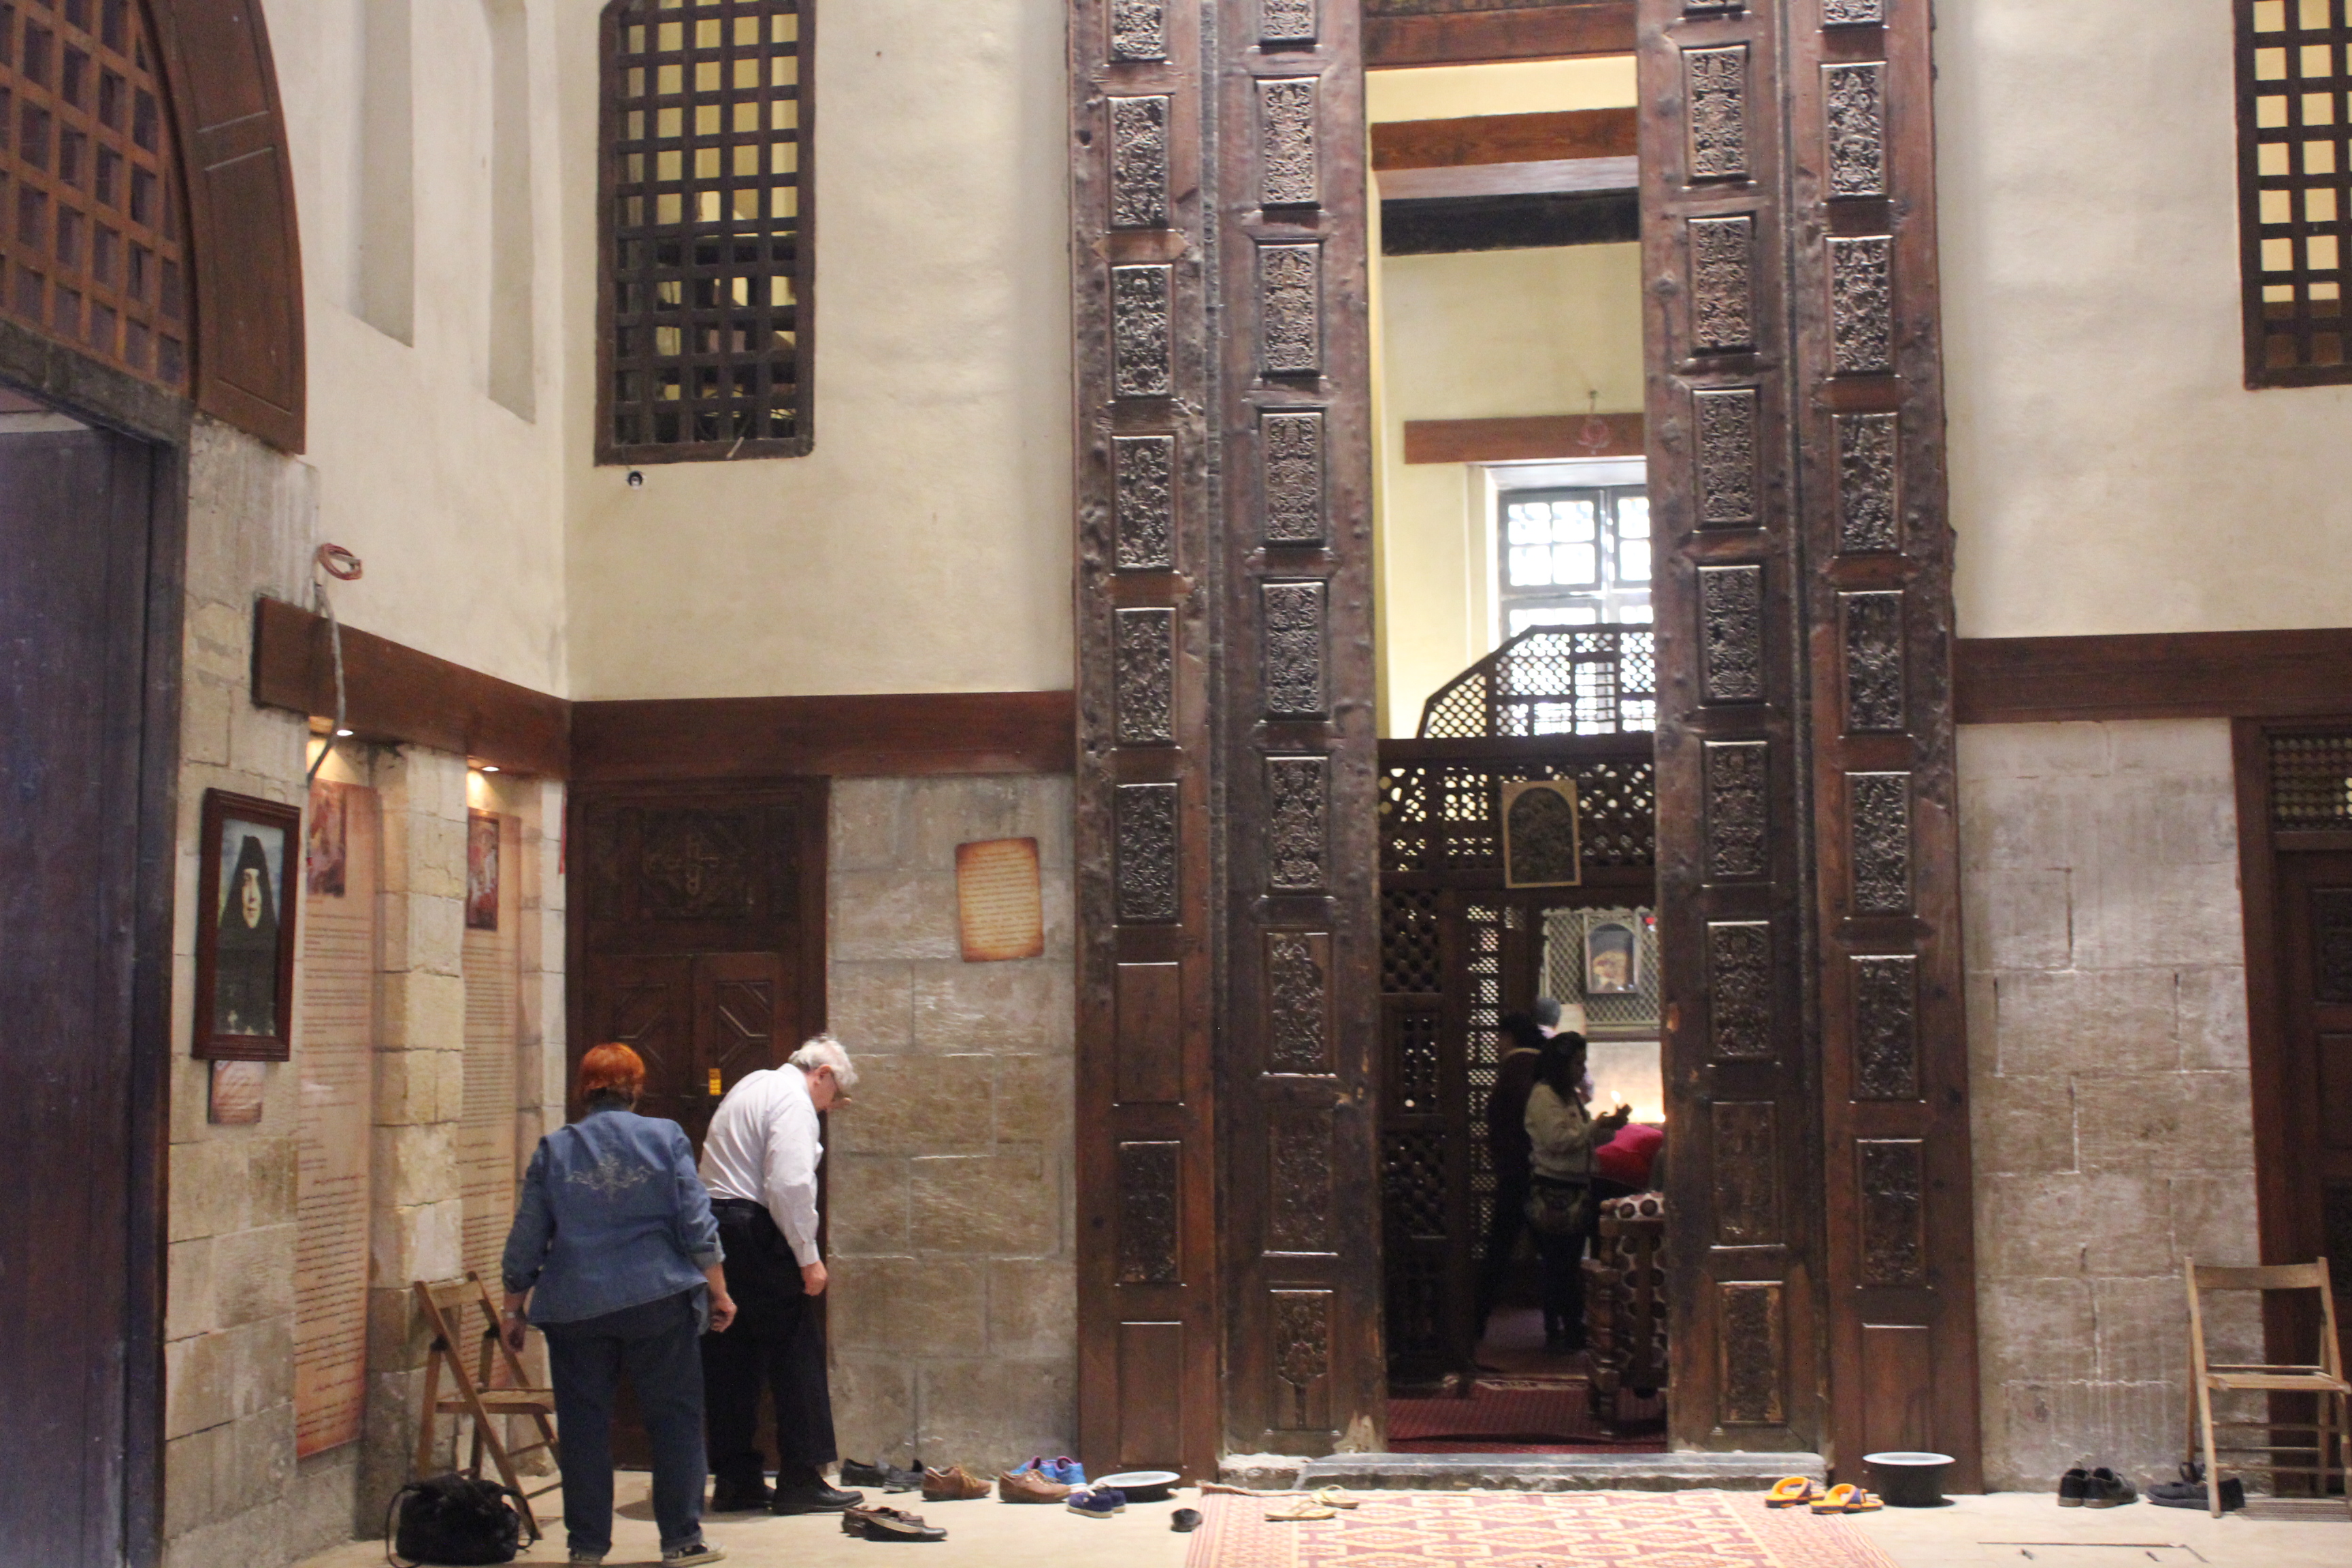 باحة دير مار جرجيس، حيث يتبرَّك الأقباط بالزيارة  - القاهرة - مصر. الصورة: ملهم الملائكة 